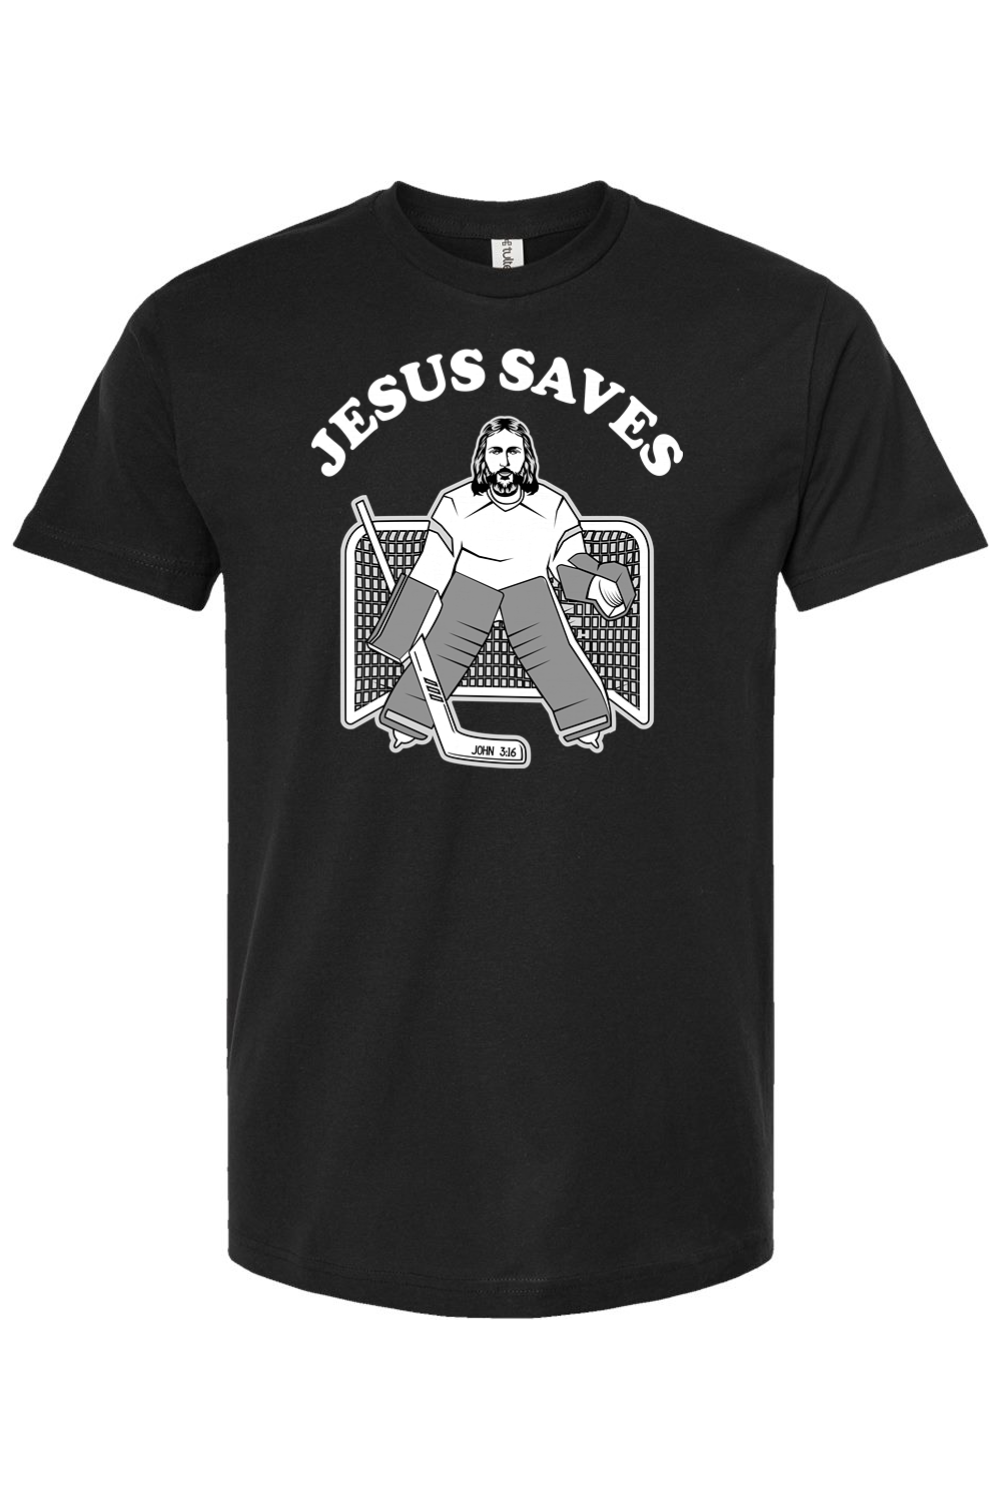 Jesus Saves - Hockey